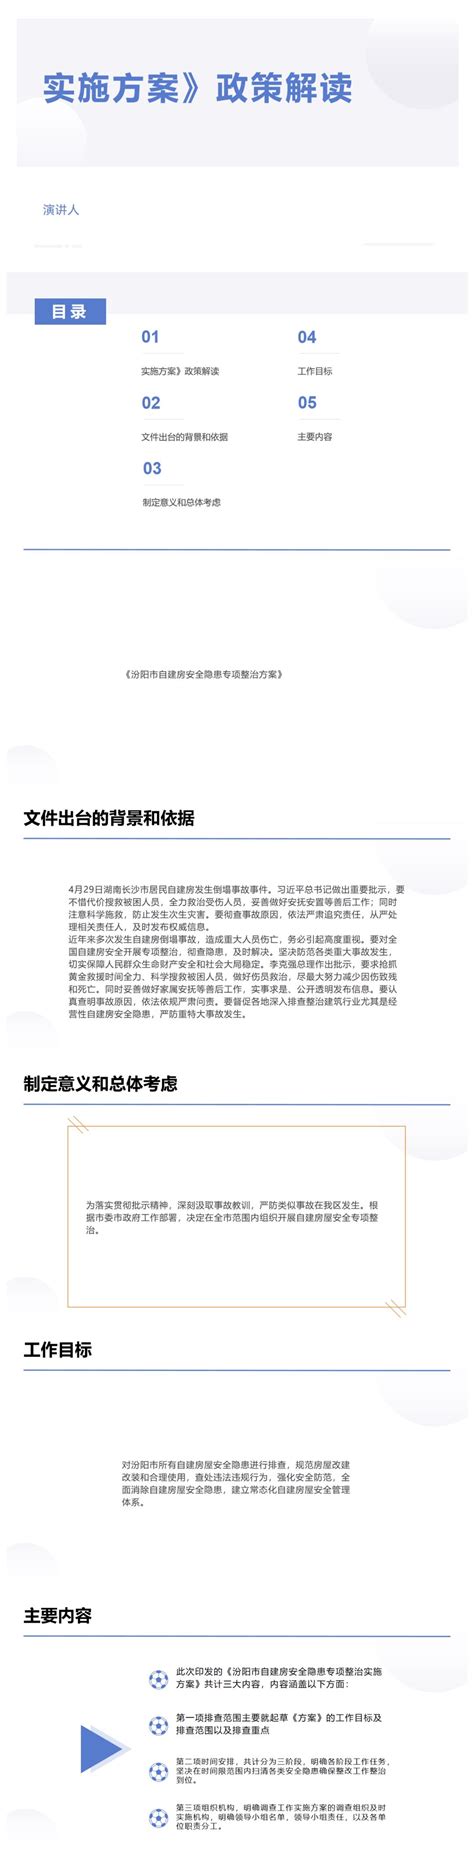 我市11家金融机构与11家企业达成合作意向并签约91490万元-汾阳市人民政府门户网站